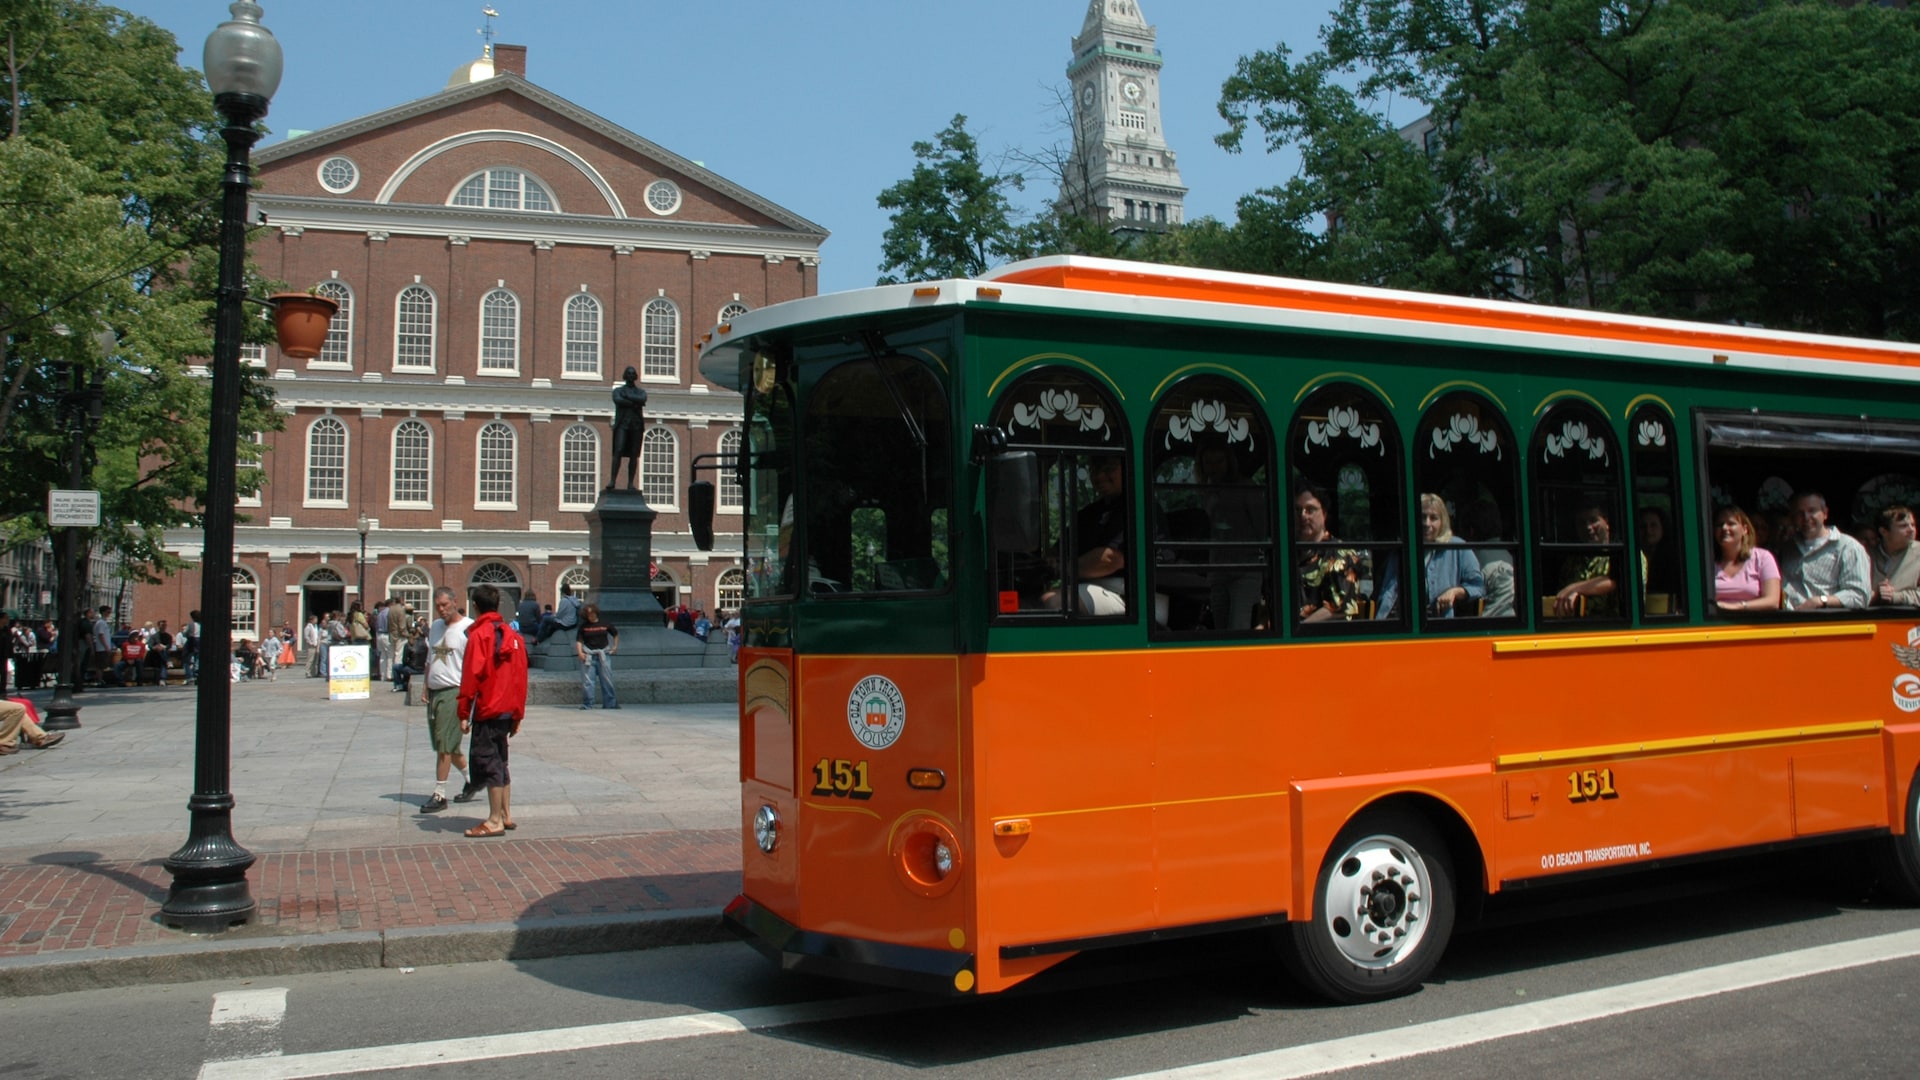 trolley tours of boston